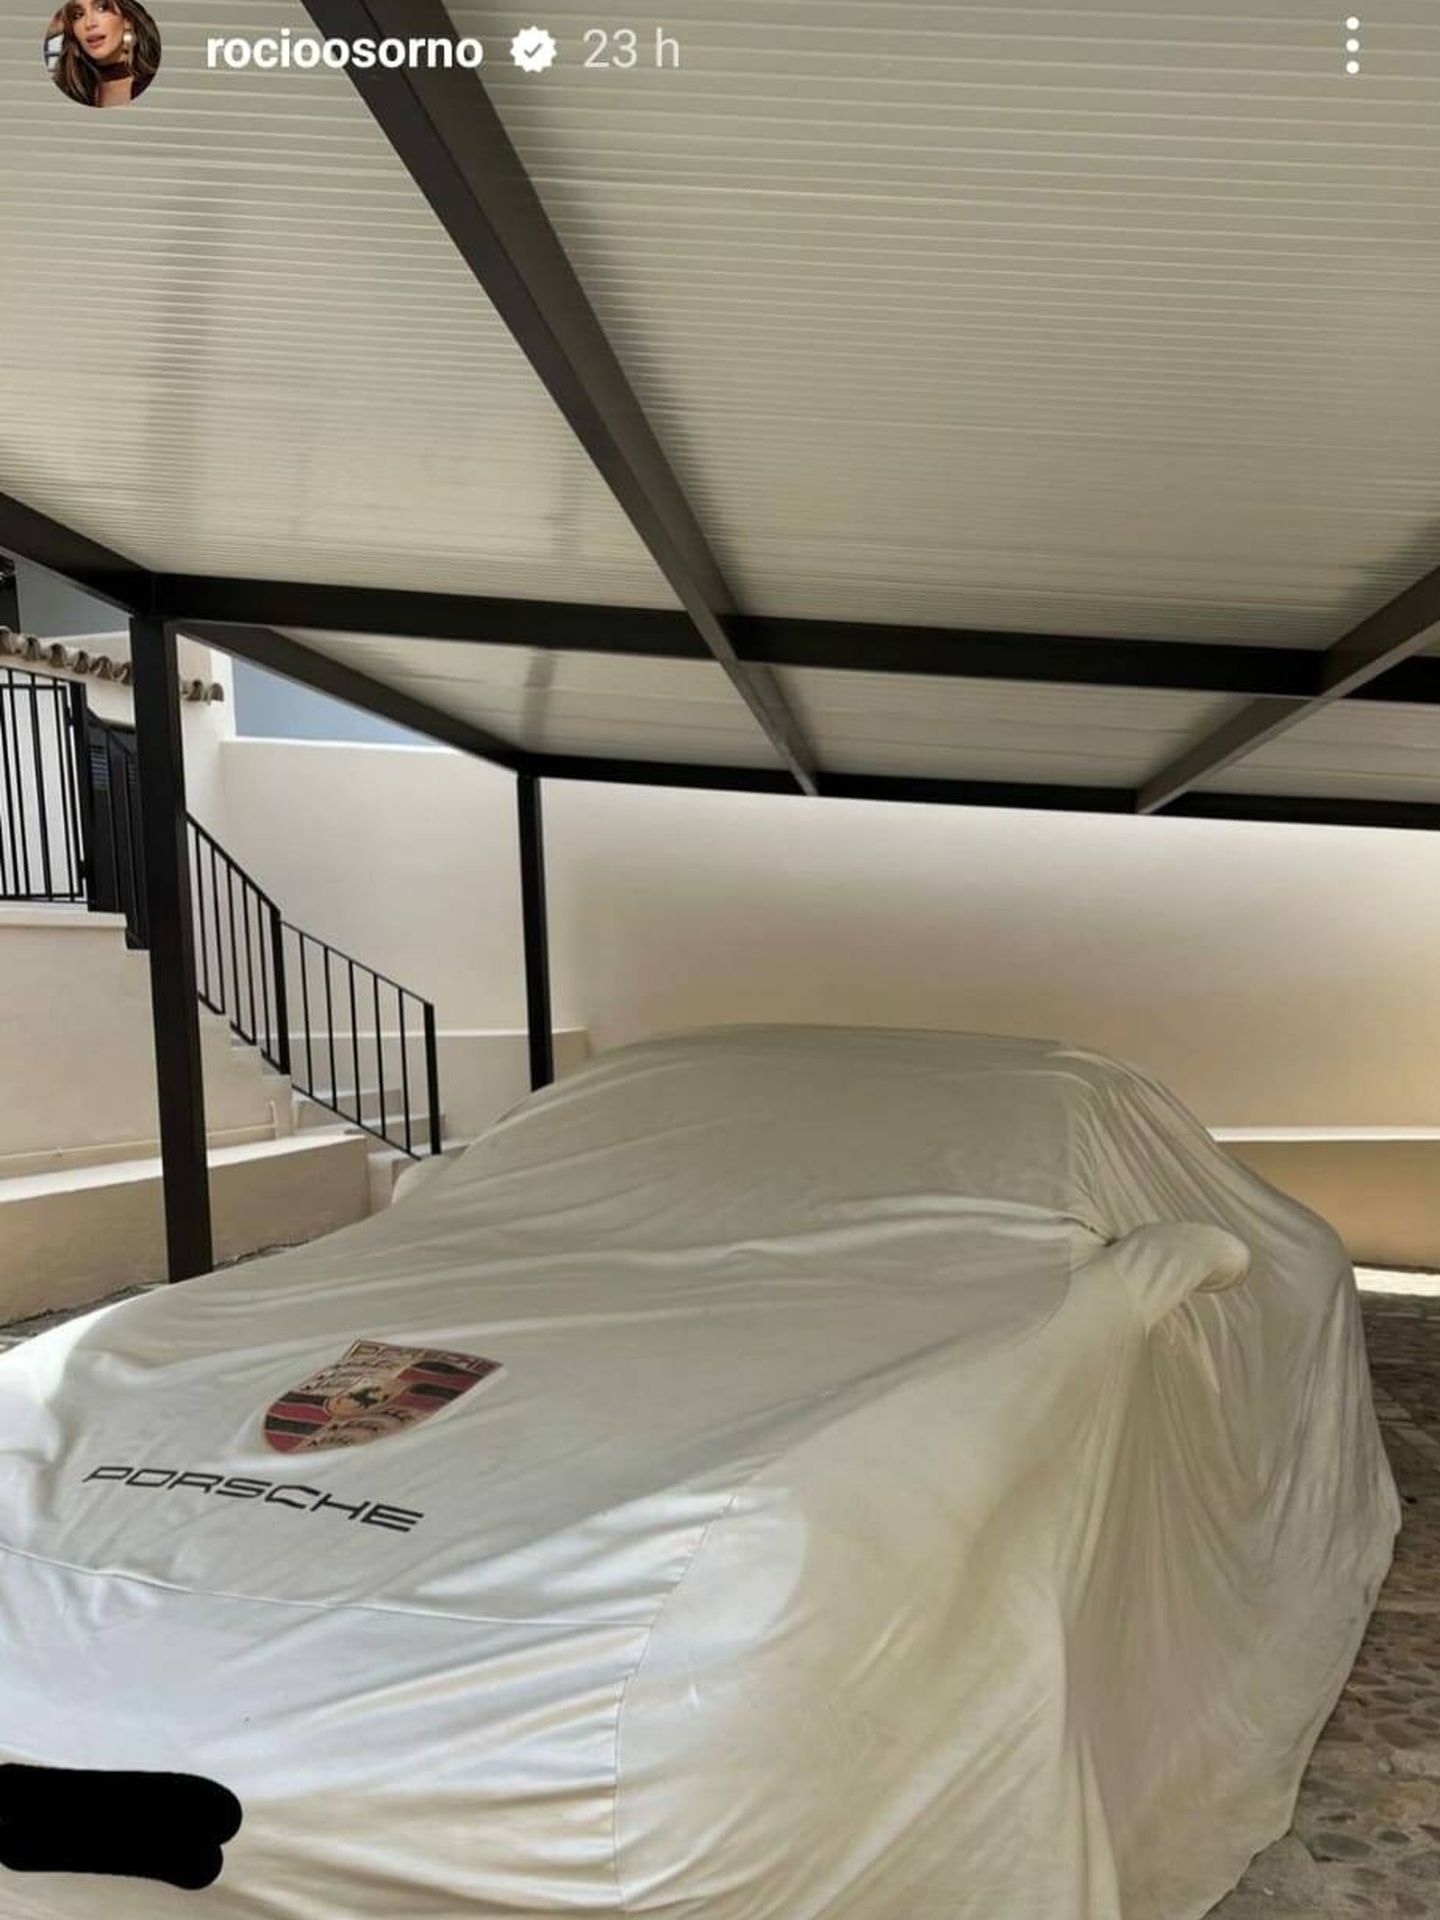 El Porsche de Rocío Osorno antes de quitarle la funda protectora. (Instagram/@rocioosorno)